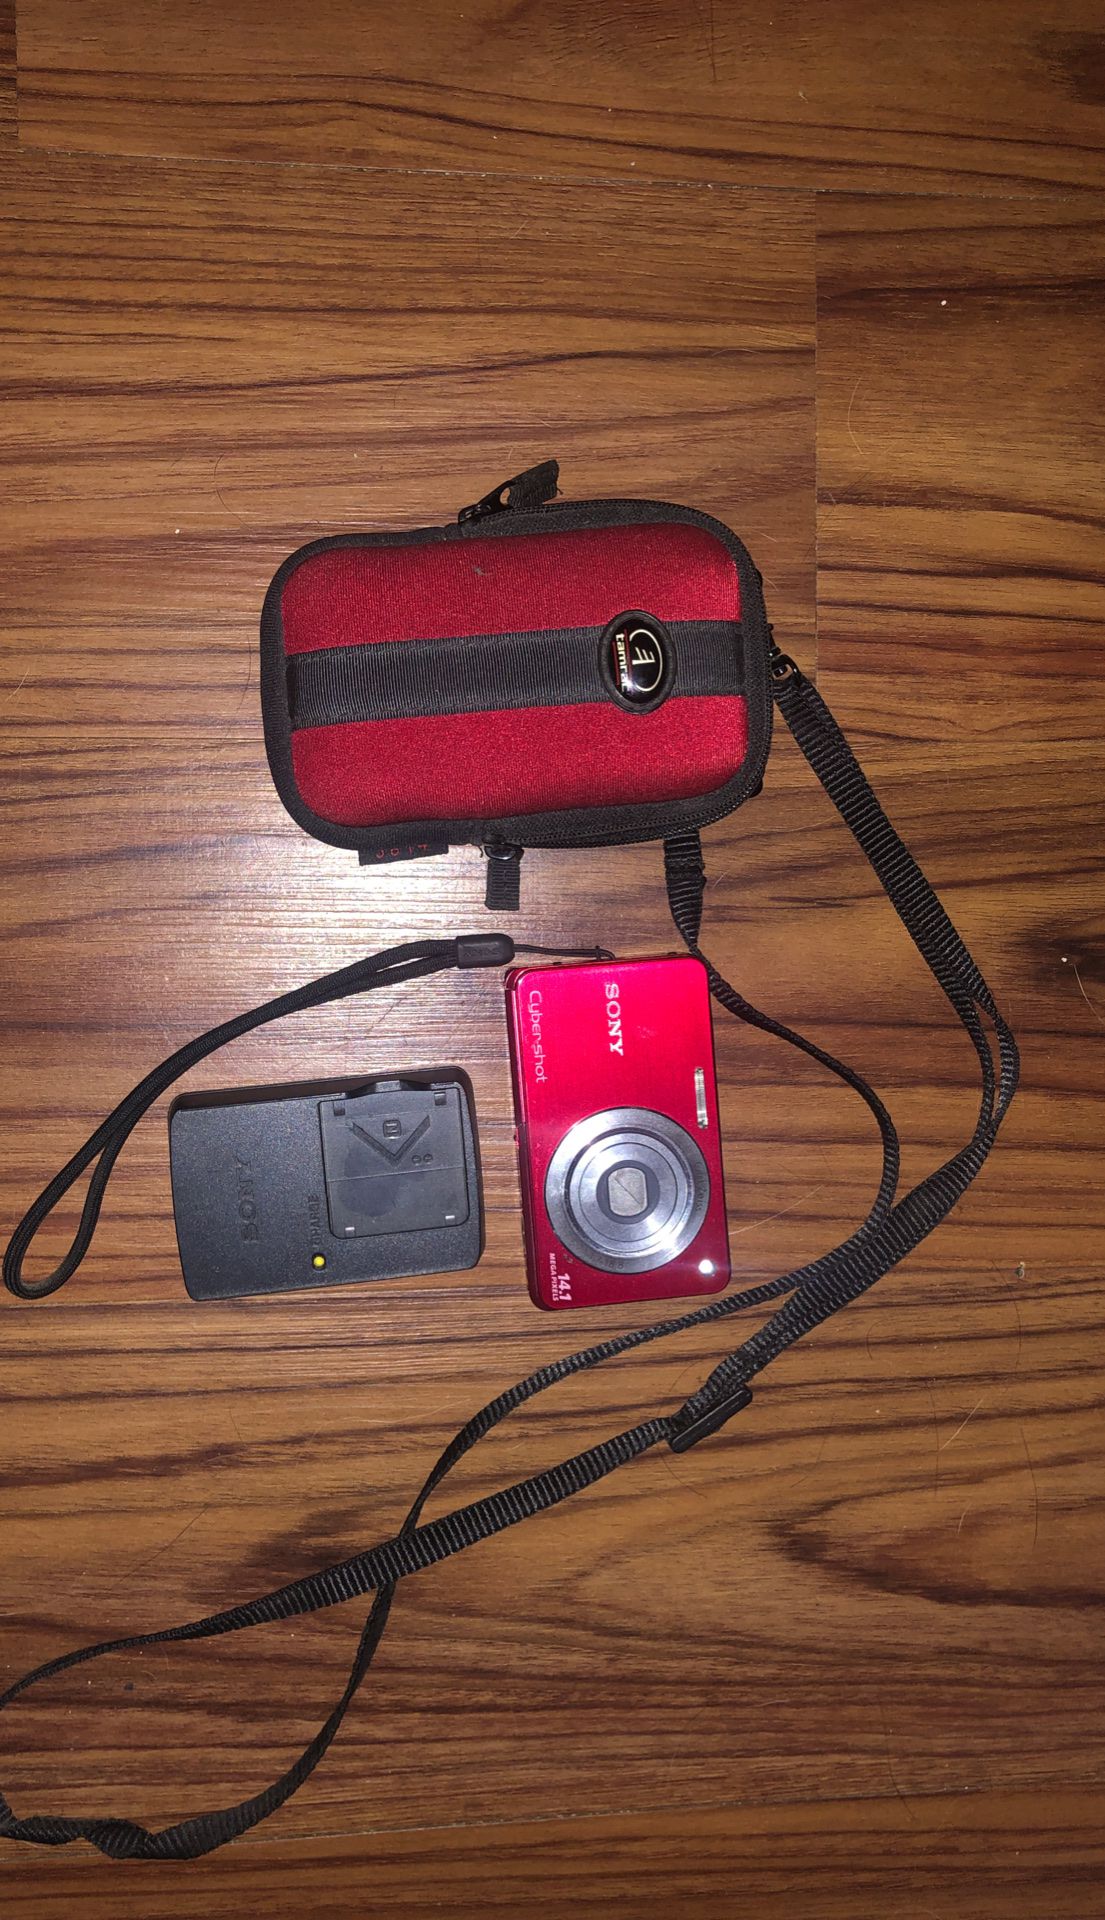 Sony Cyber-shot DSC-W330 14.1MP Digital Camera - Red 4x Zoom Zeiss Lens 3.0" LCD